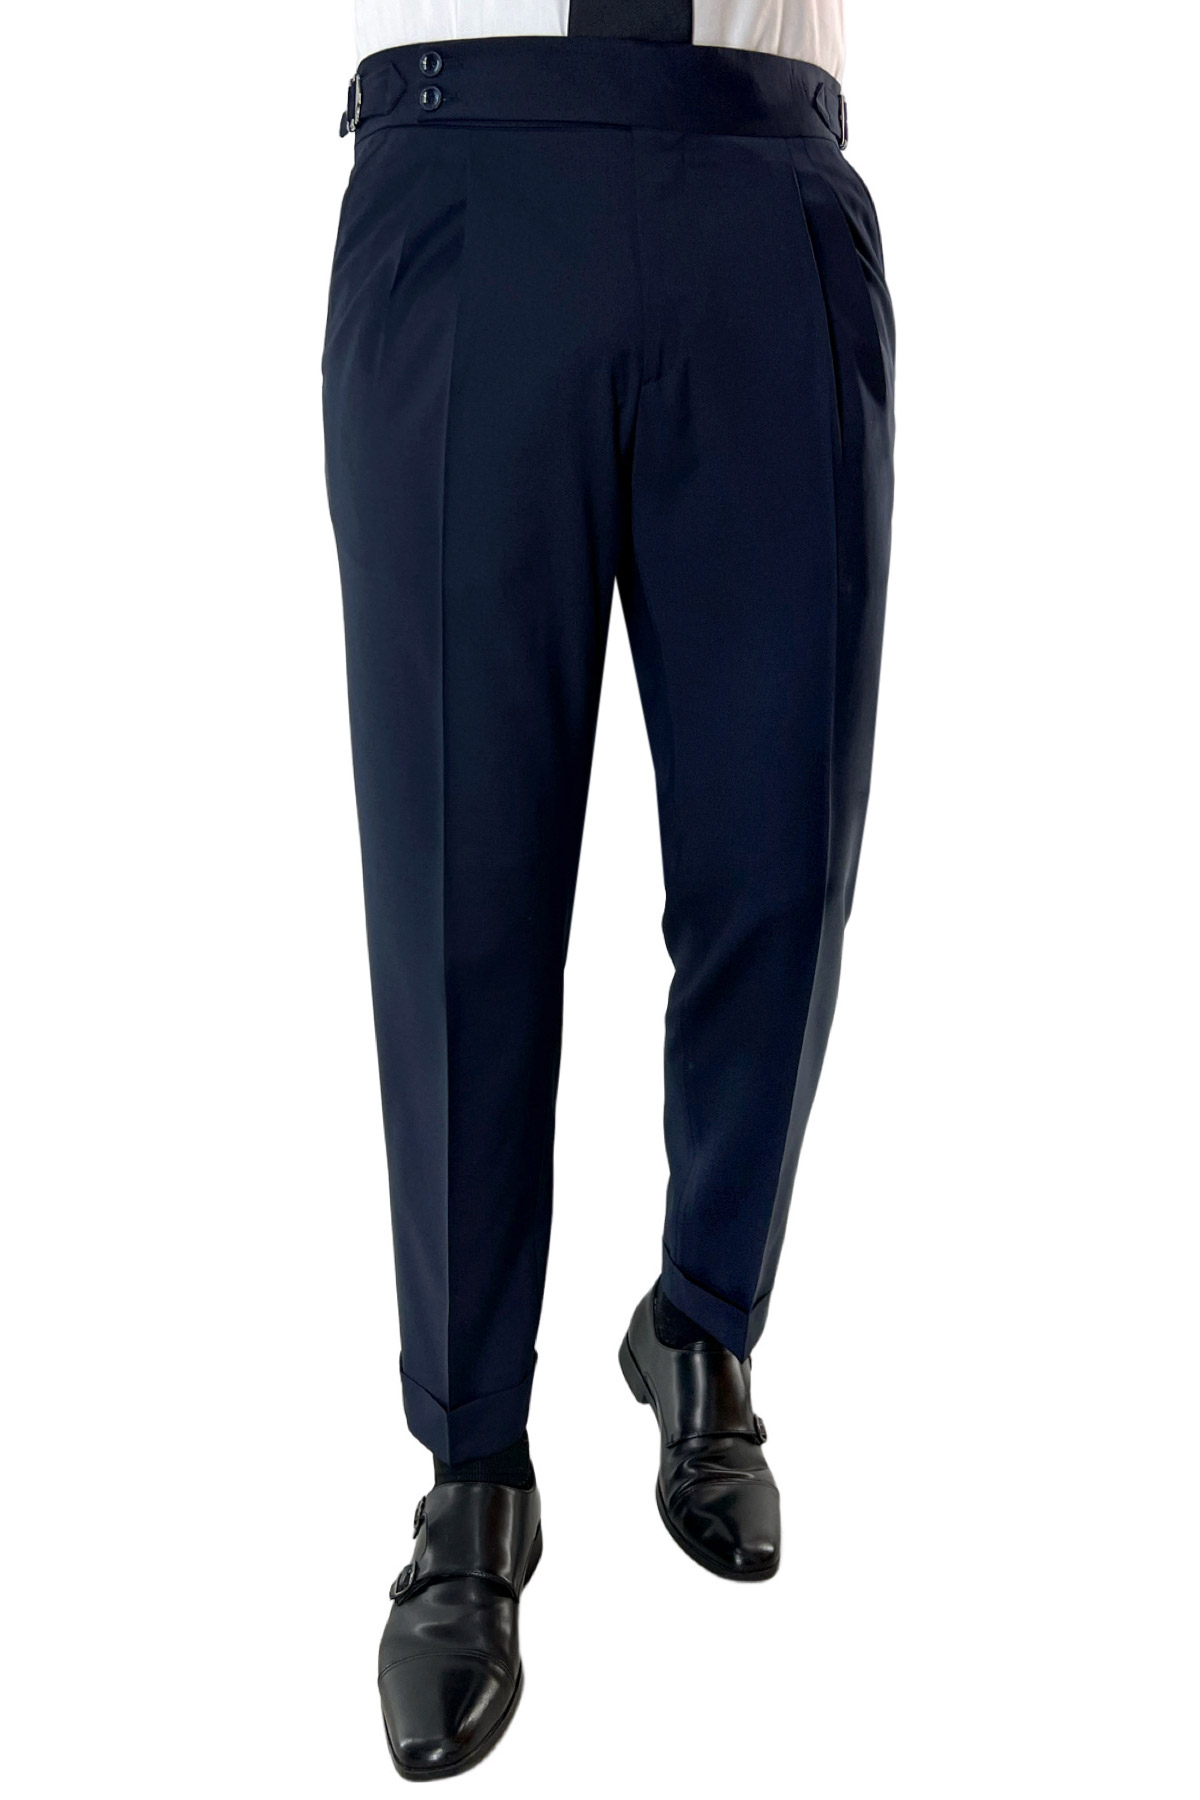 Pantalone uomo Navy blu vita alta doppia pinces in fresco lana misto